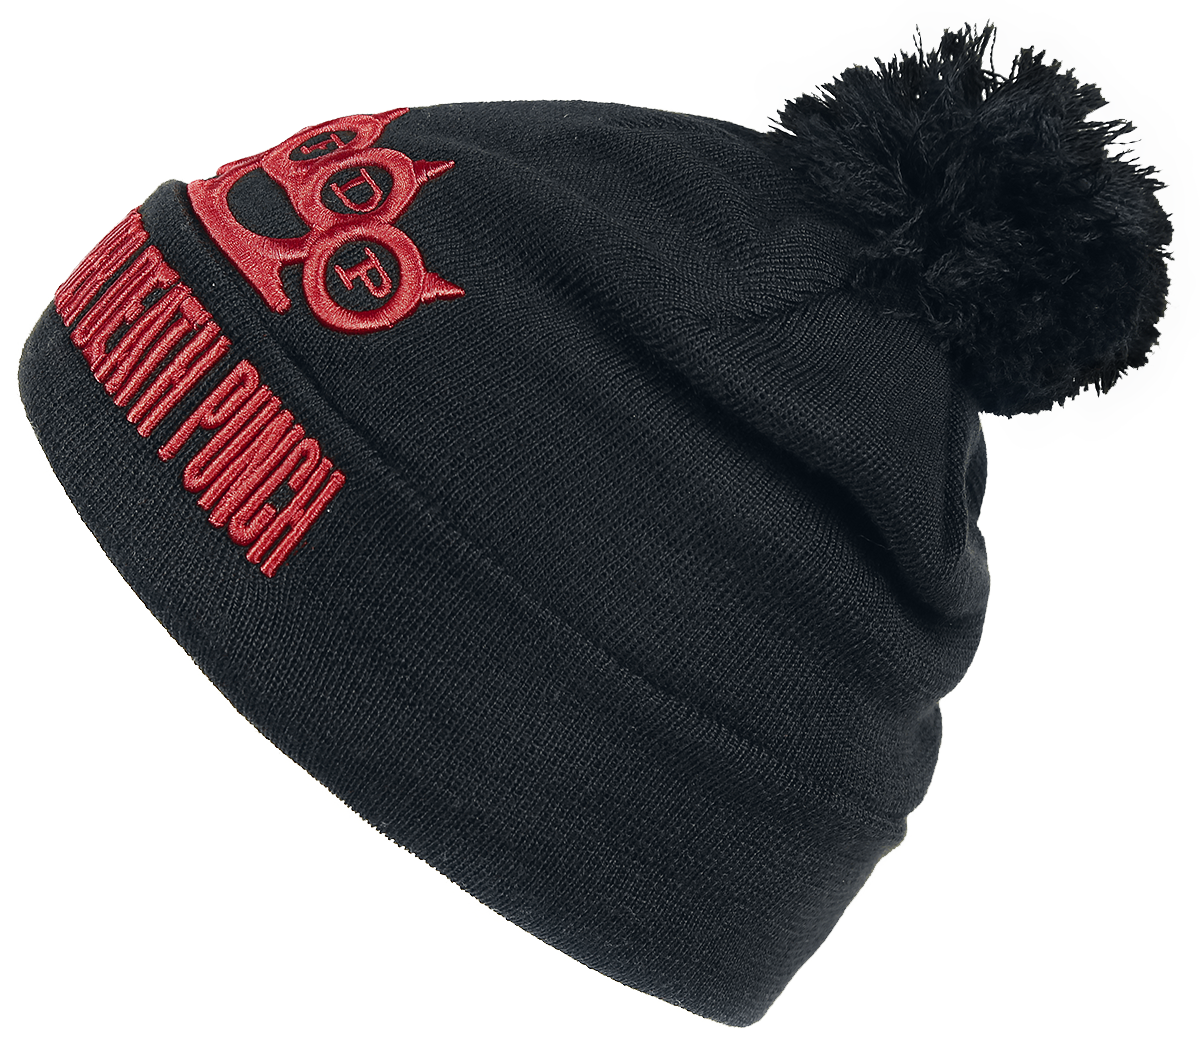 Five Finger Death Punch - Logo Beanie - Mütze - schwarz - EMP Exklusiv!